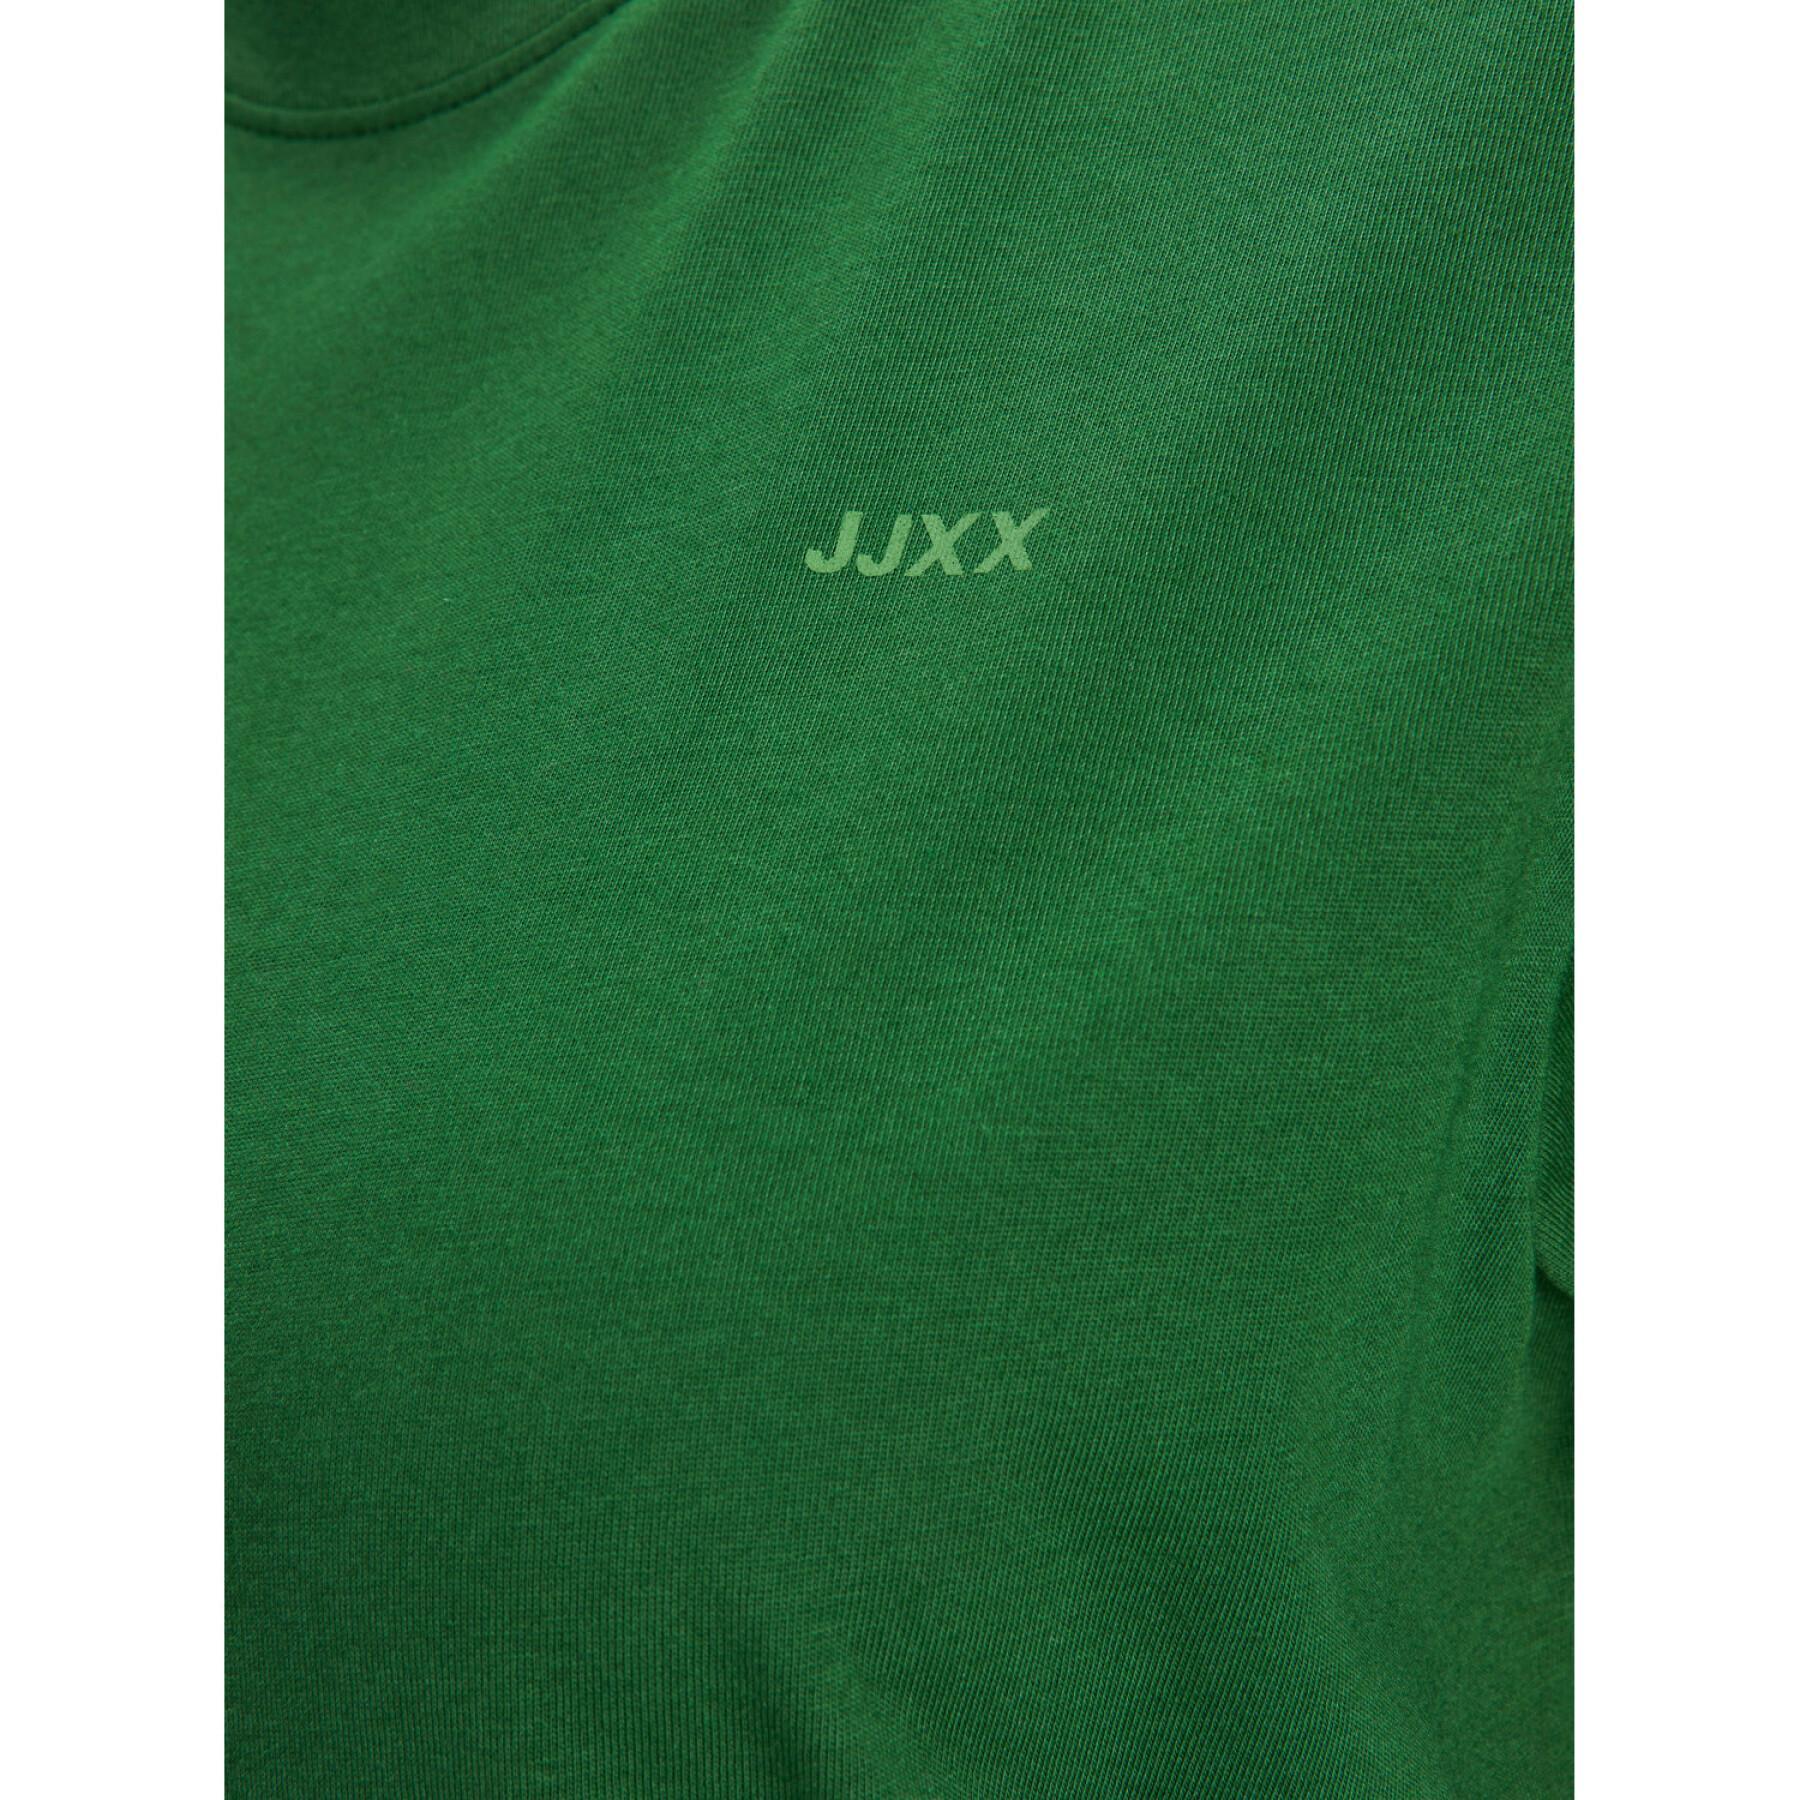 T-Shirt Damen Jack & Jones Anna REG Every Logo